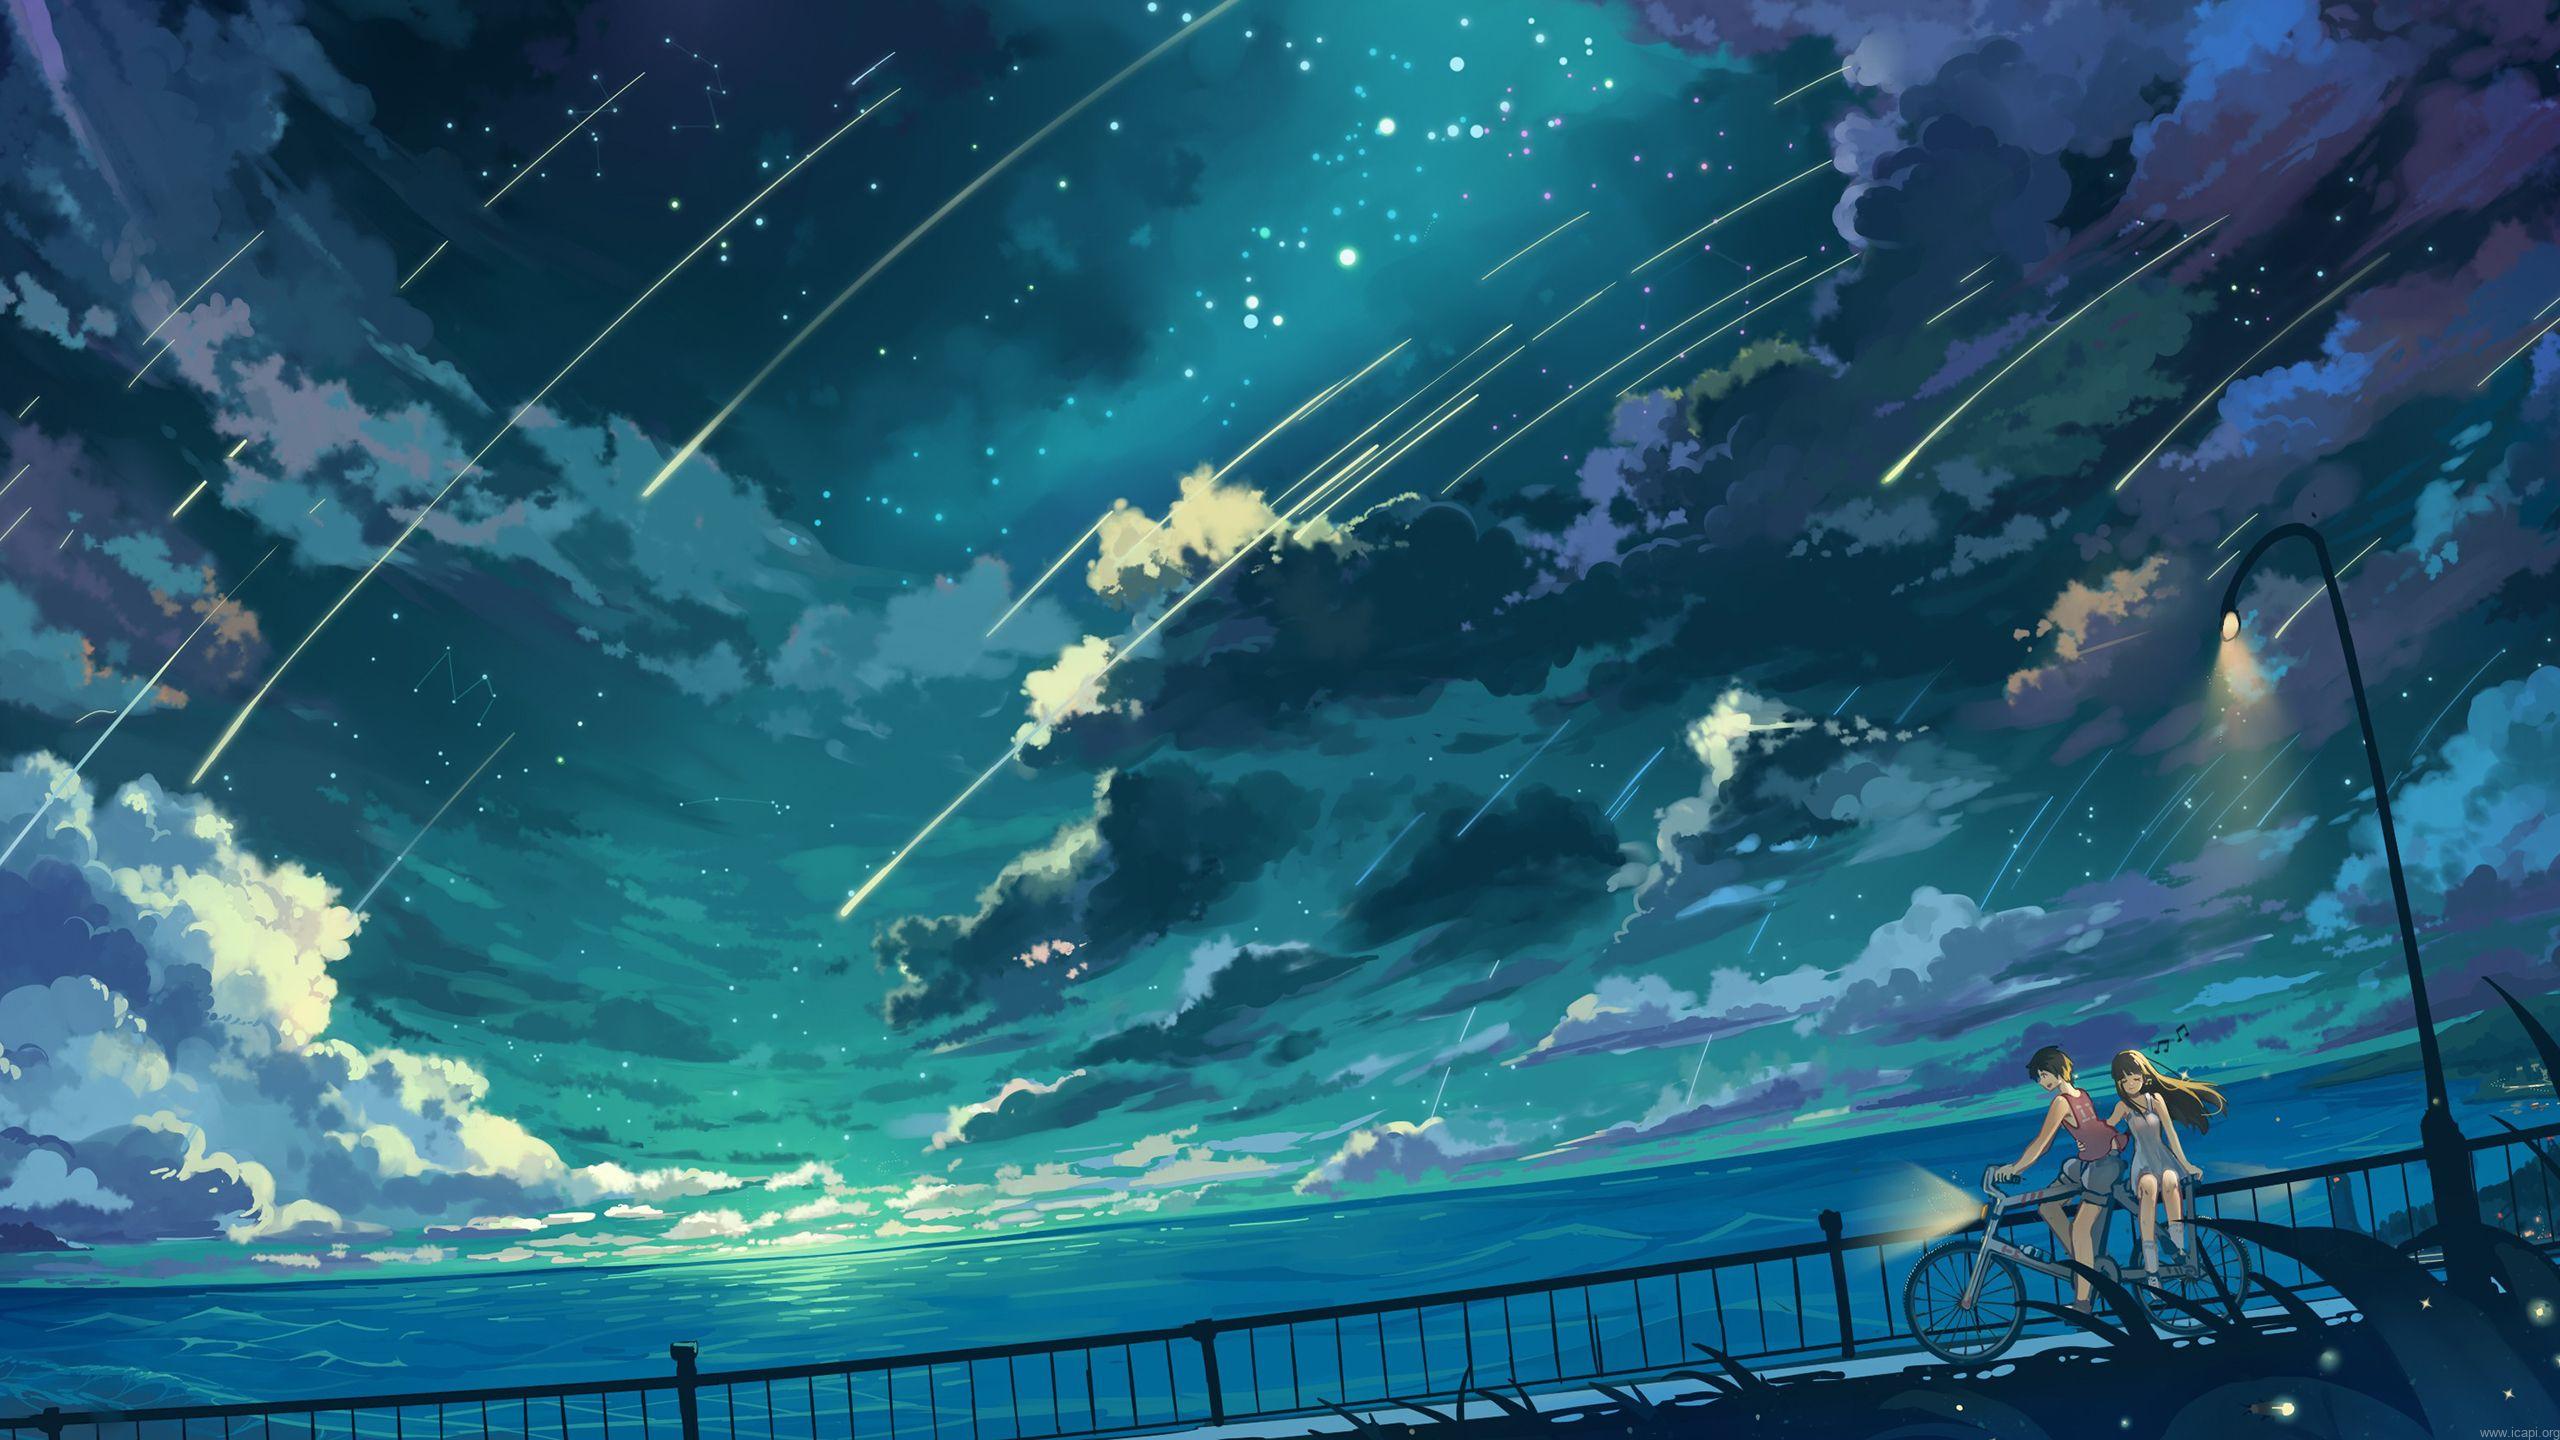 Tổng hợp những ảnh nền đẹp nhất  Hình nền máy tính đẹp nhất  Anime  scenery wallpaper Anime backgrounds wallpapers Scenery wallpaper